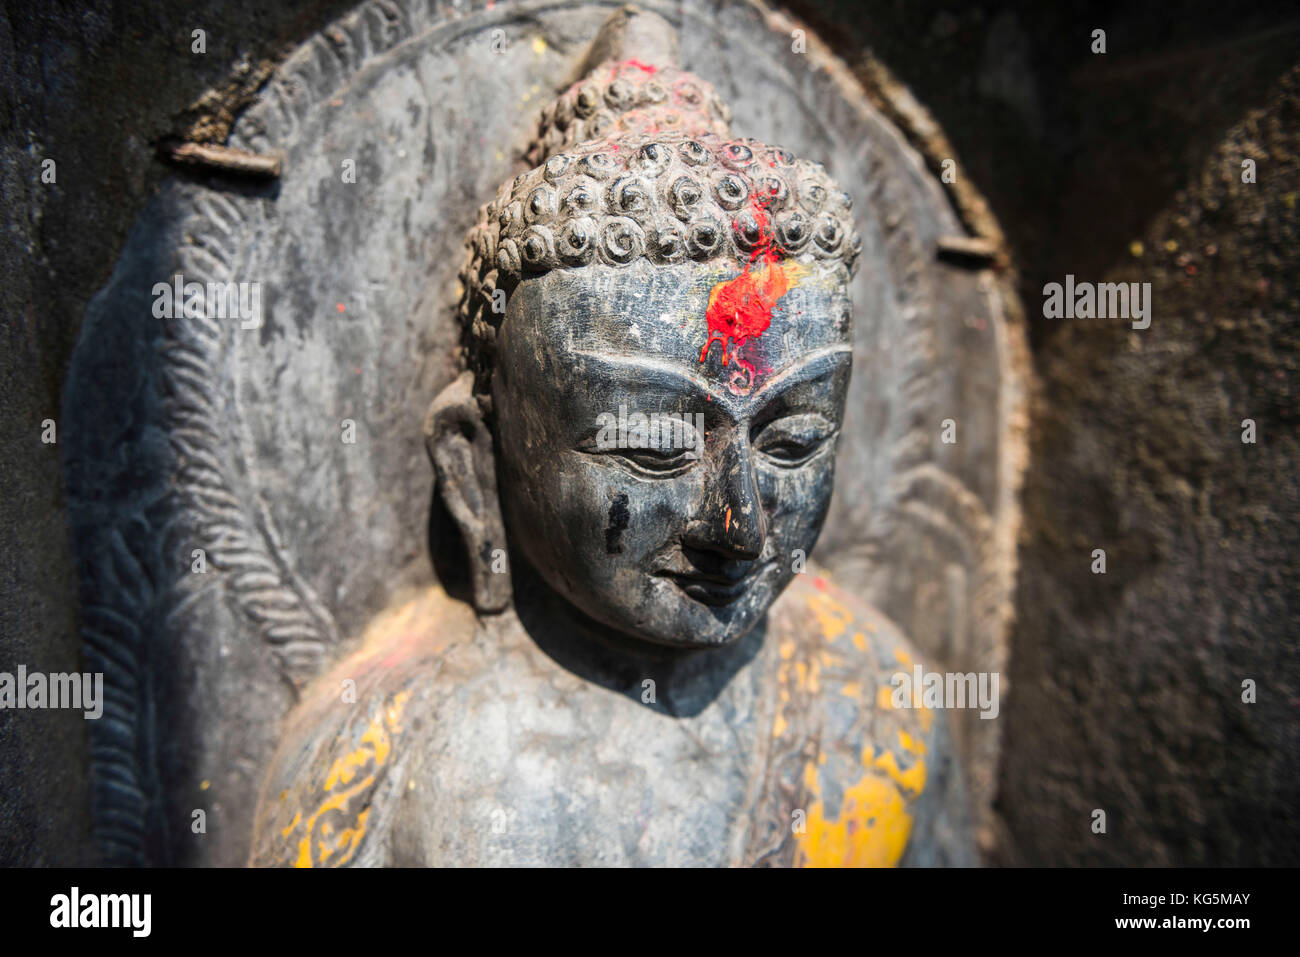 Di katmandu, area bagmati, Nepal piccola statua raffigurante una dea nepalese Foto Stock